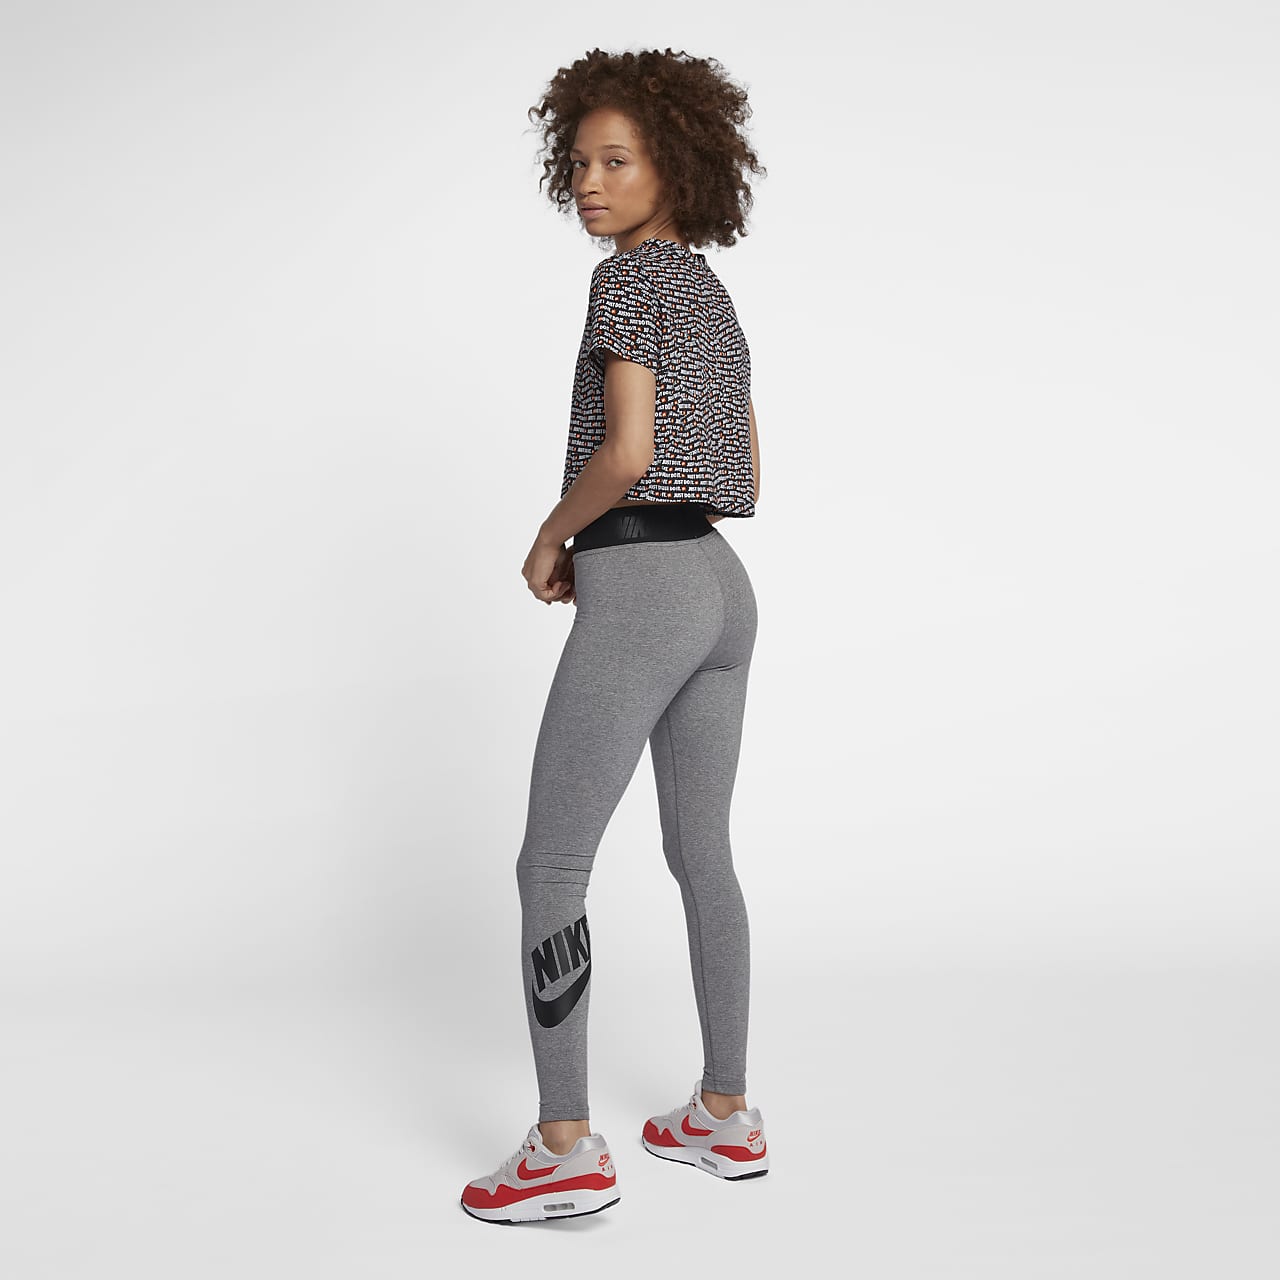 Inloggegevens Ijsbeer Fauteuil Nike Sportswear Leg-A-See Women's High-Rise Leggings. Nike IL